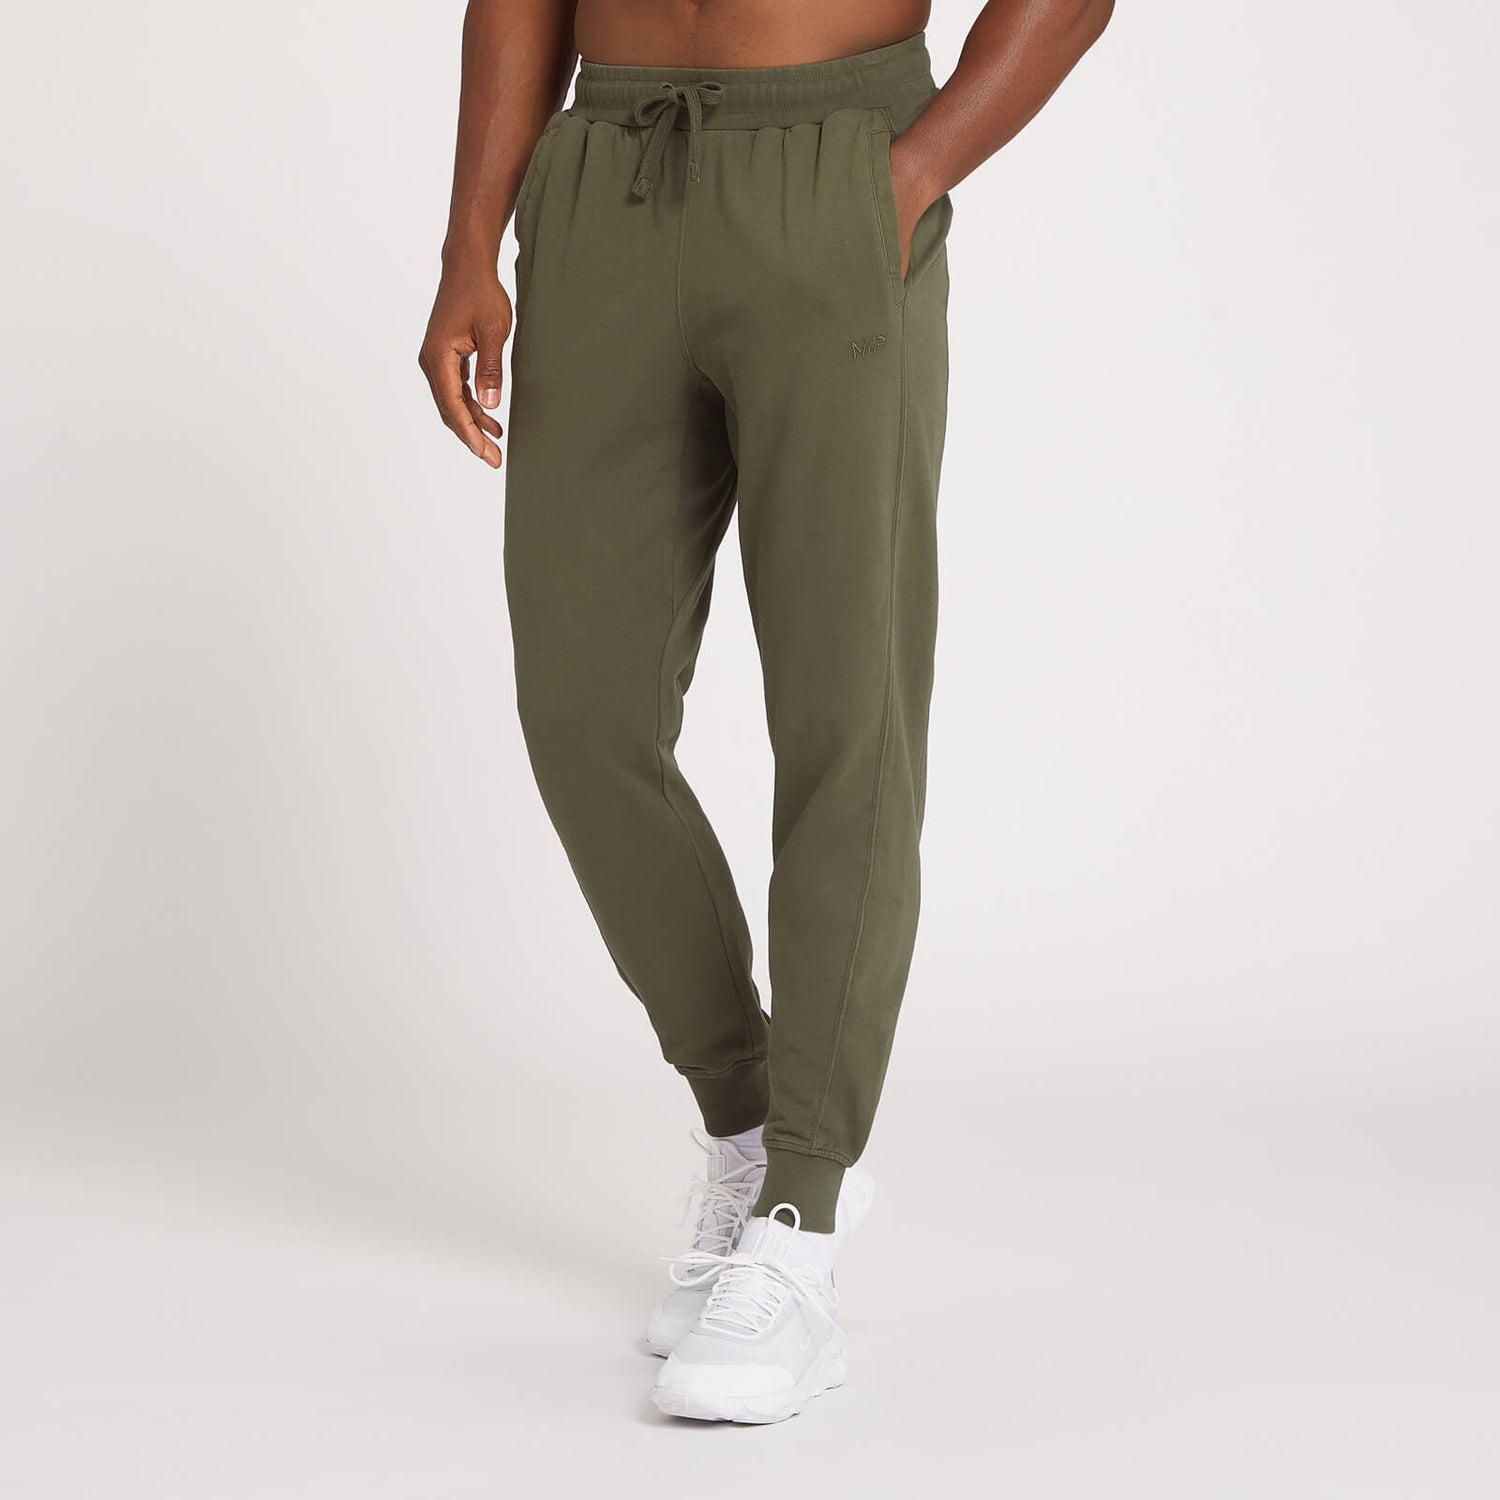 Pantalón deportivo de entrenamiento Dynamic para hombre de MP - Verde aceituna oscuro - L